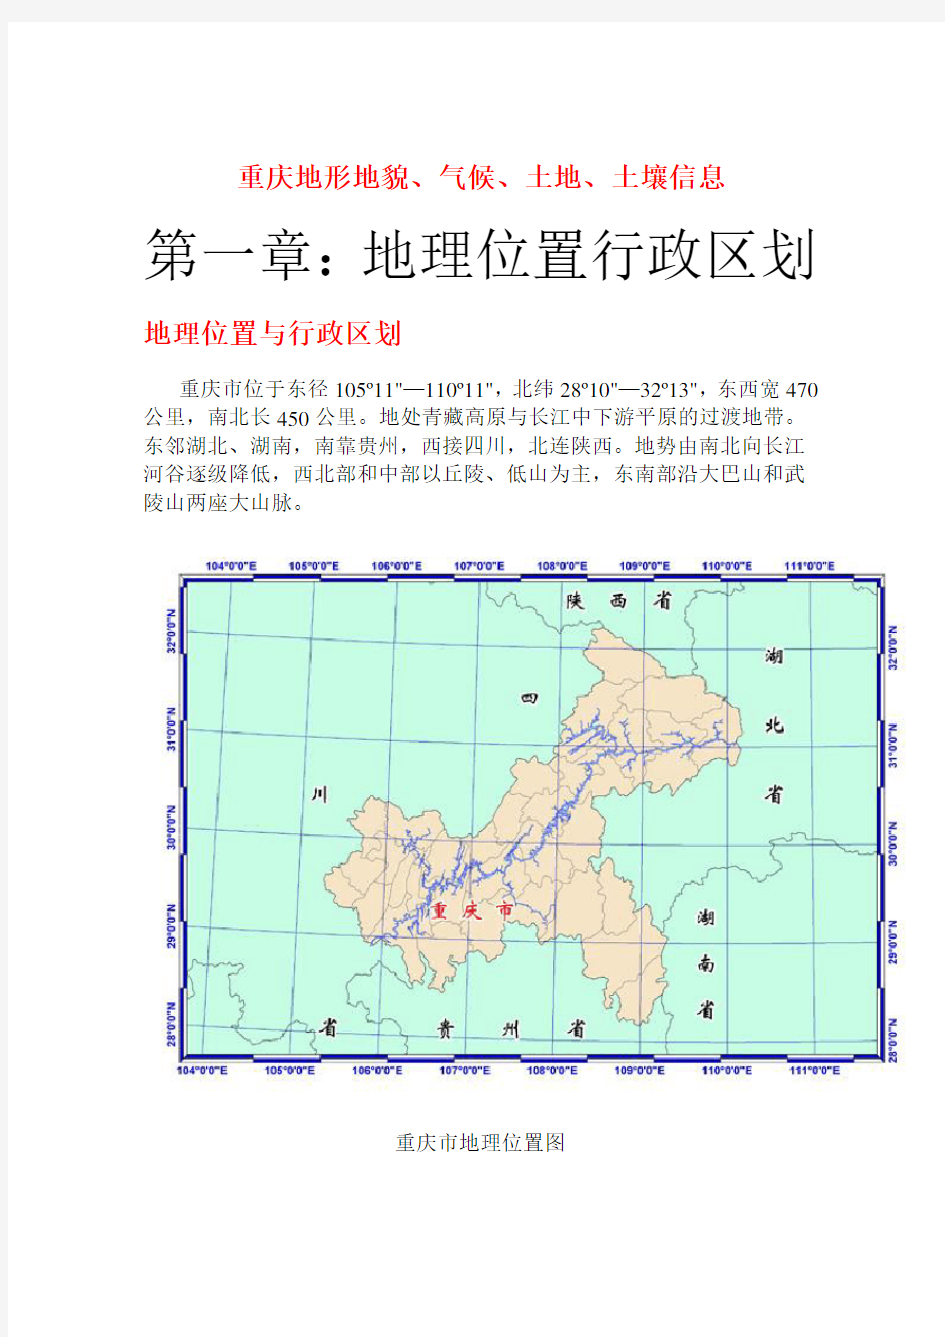 重庆地形地貌、气候、土地、土壤信息